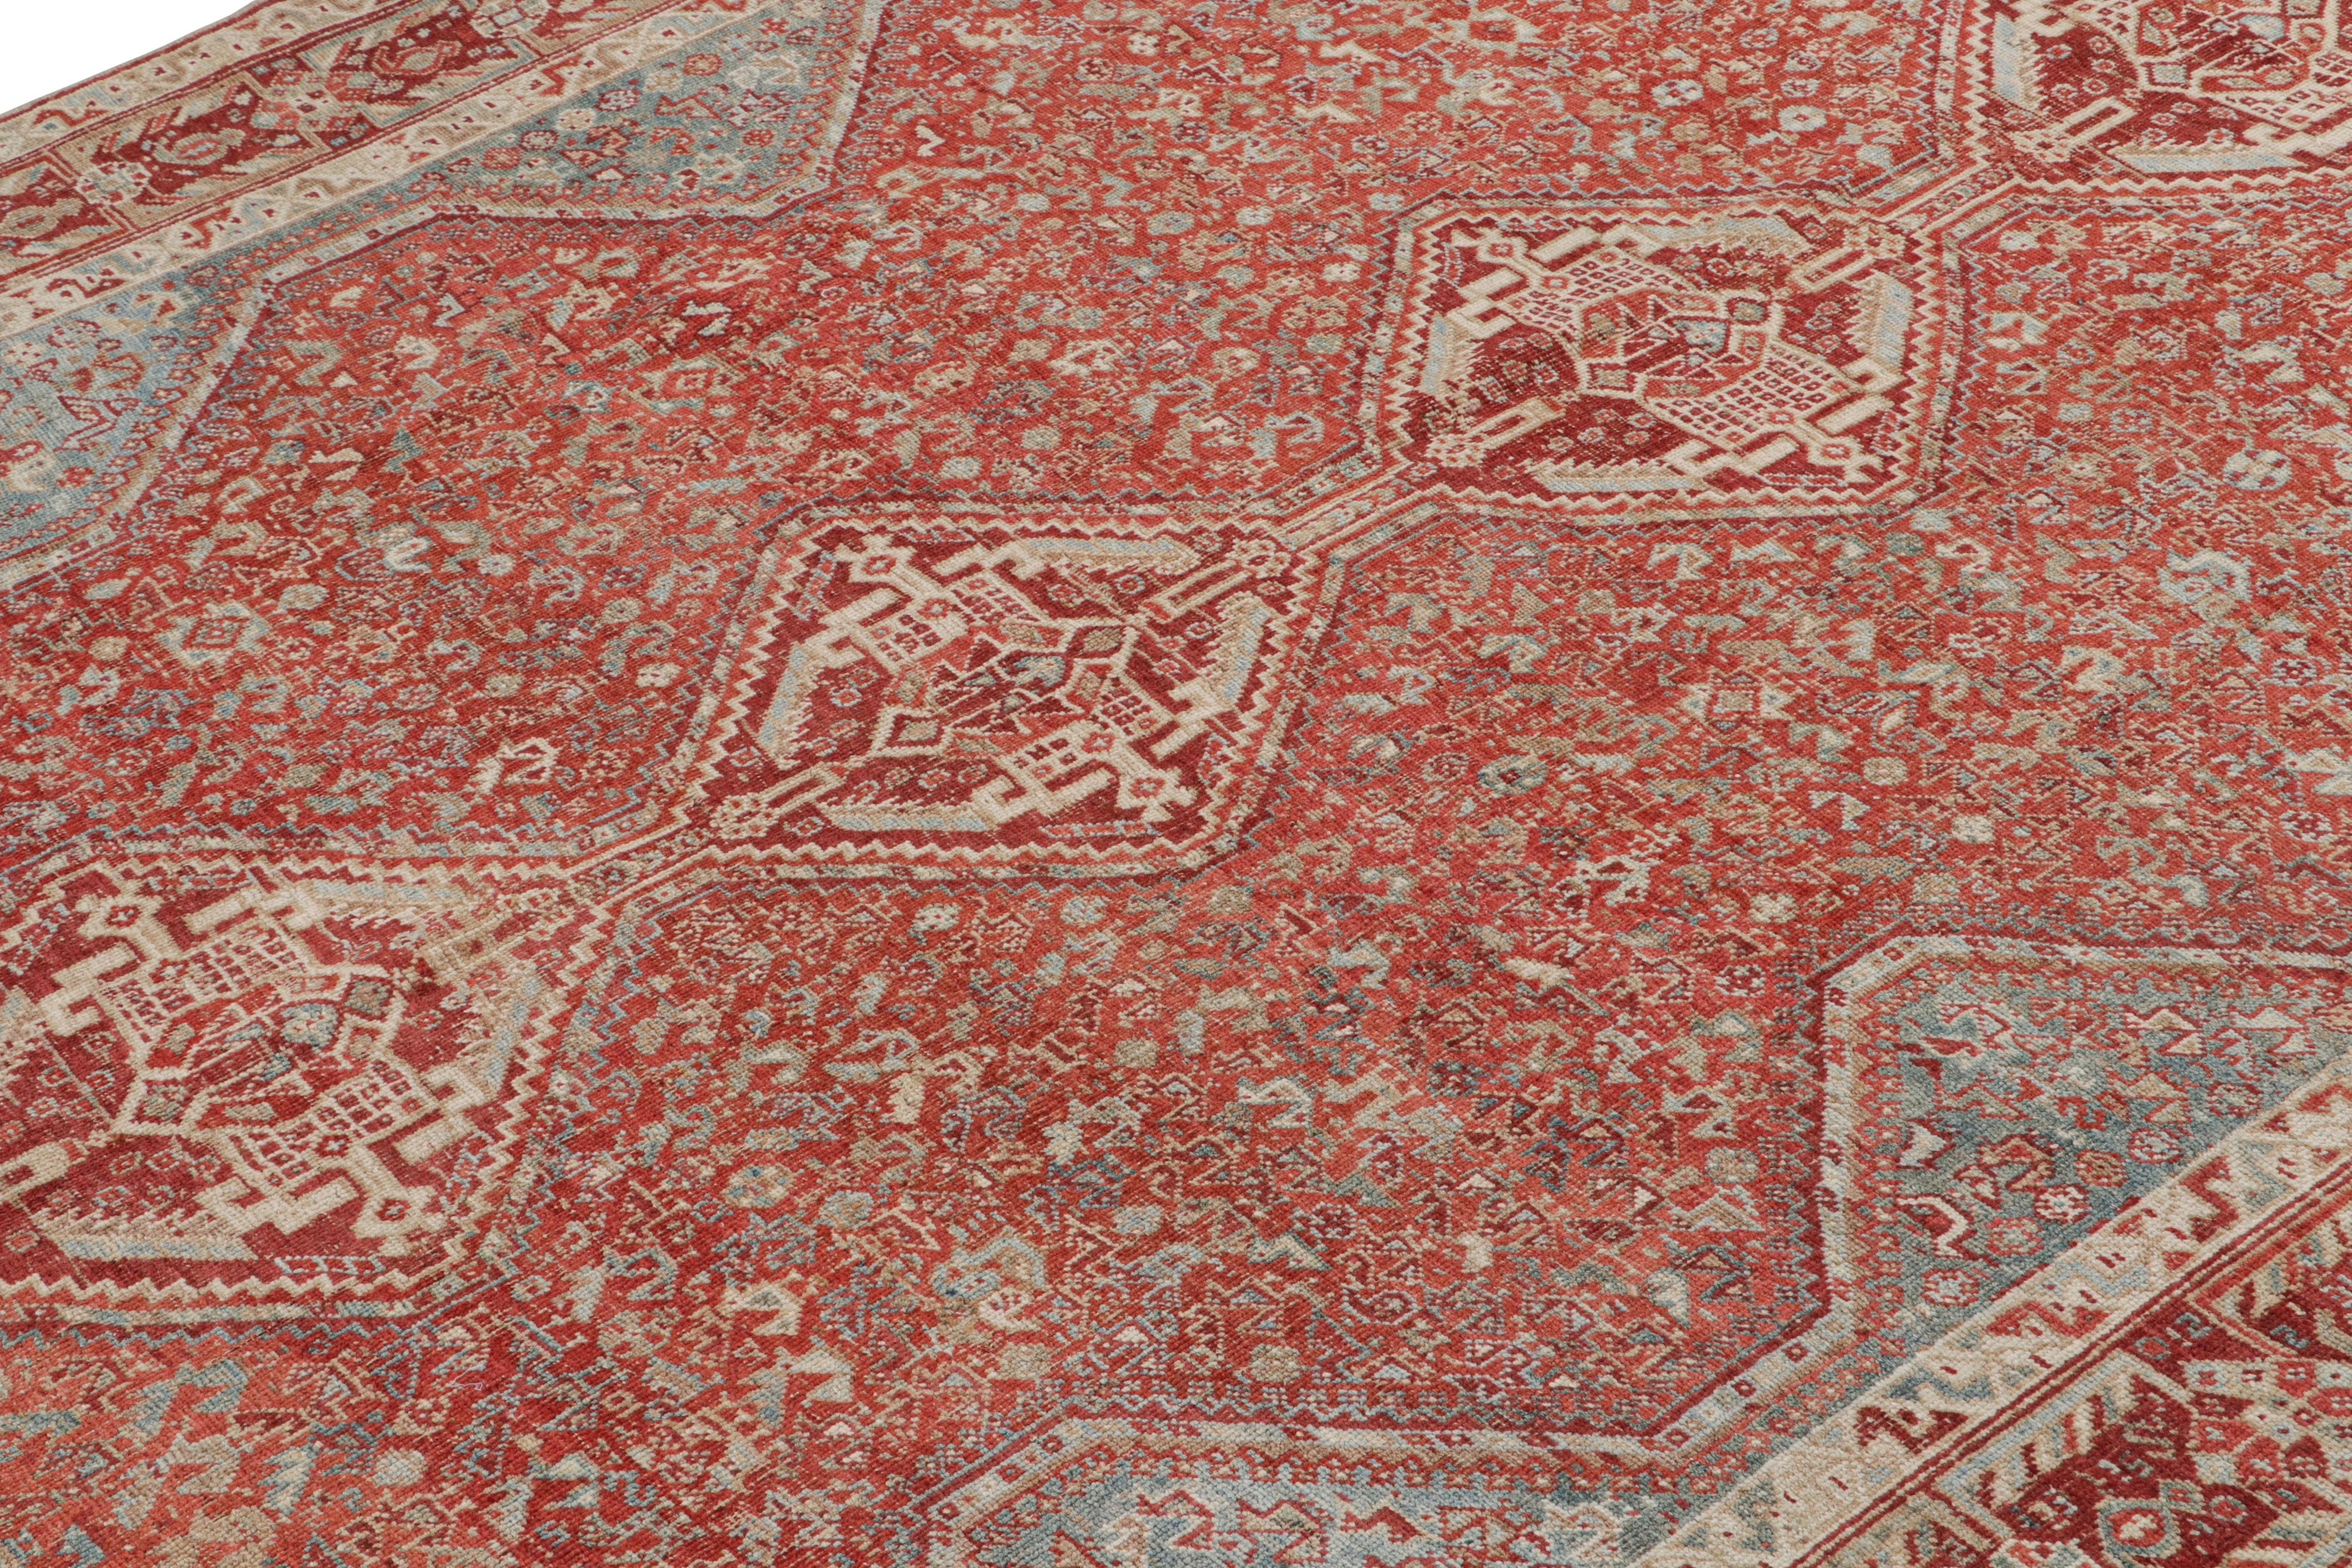 Dieser 6x9 große Vintage-Teppich ist vermutlich ein seltener Ersari-Teppich aus der Mitte des Jahrhunderts, handgeknüpft aus Wolle und aus der Türkei stammend, ca. 1950-1960.

Über das Design:

Die Ersari sind ein Unterstamm der Turkmenen, der für